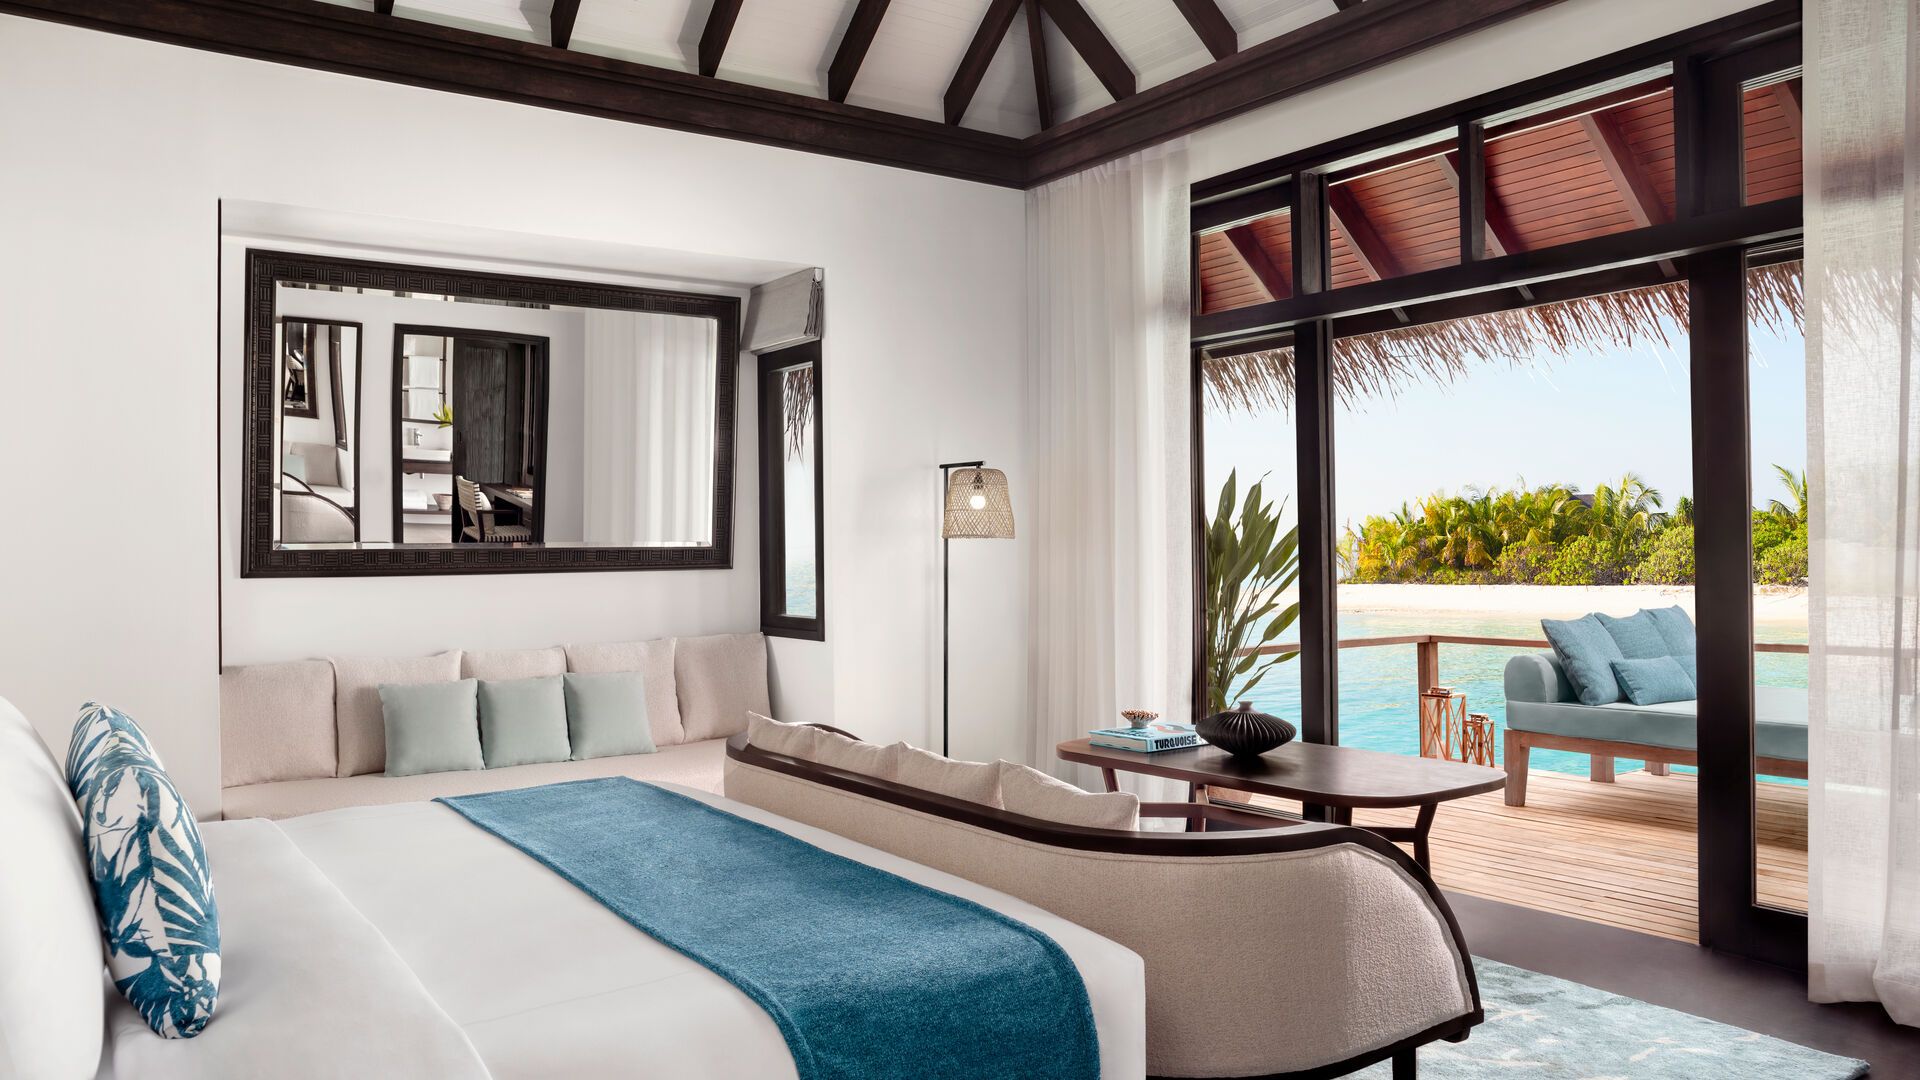 Maldives - Hôtel Anantara Veli Maldives Resort 5*